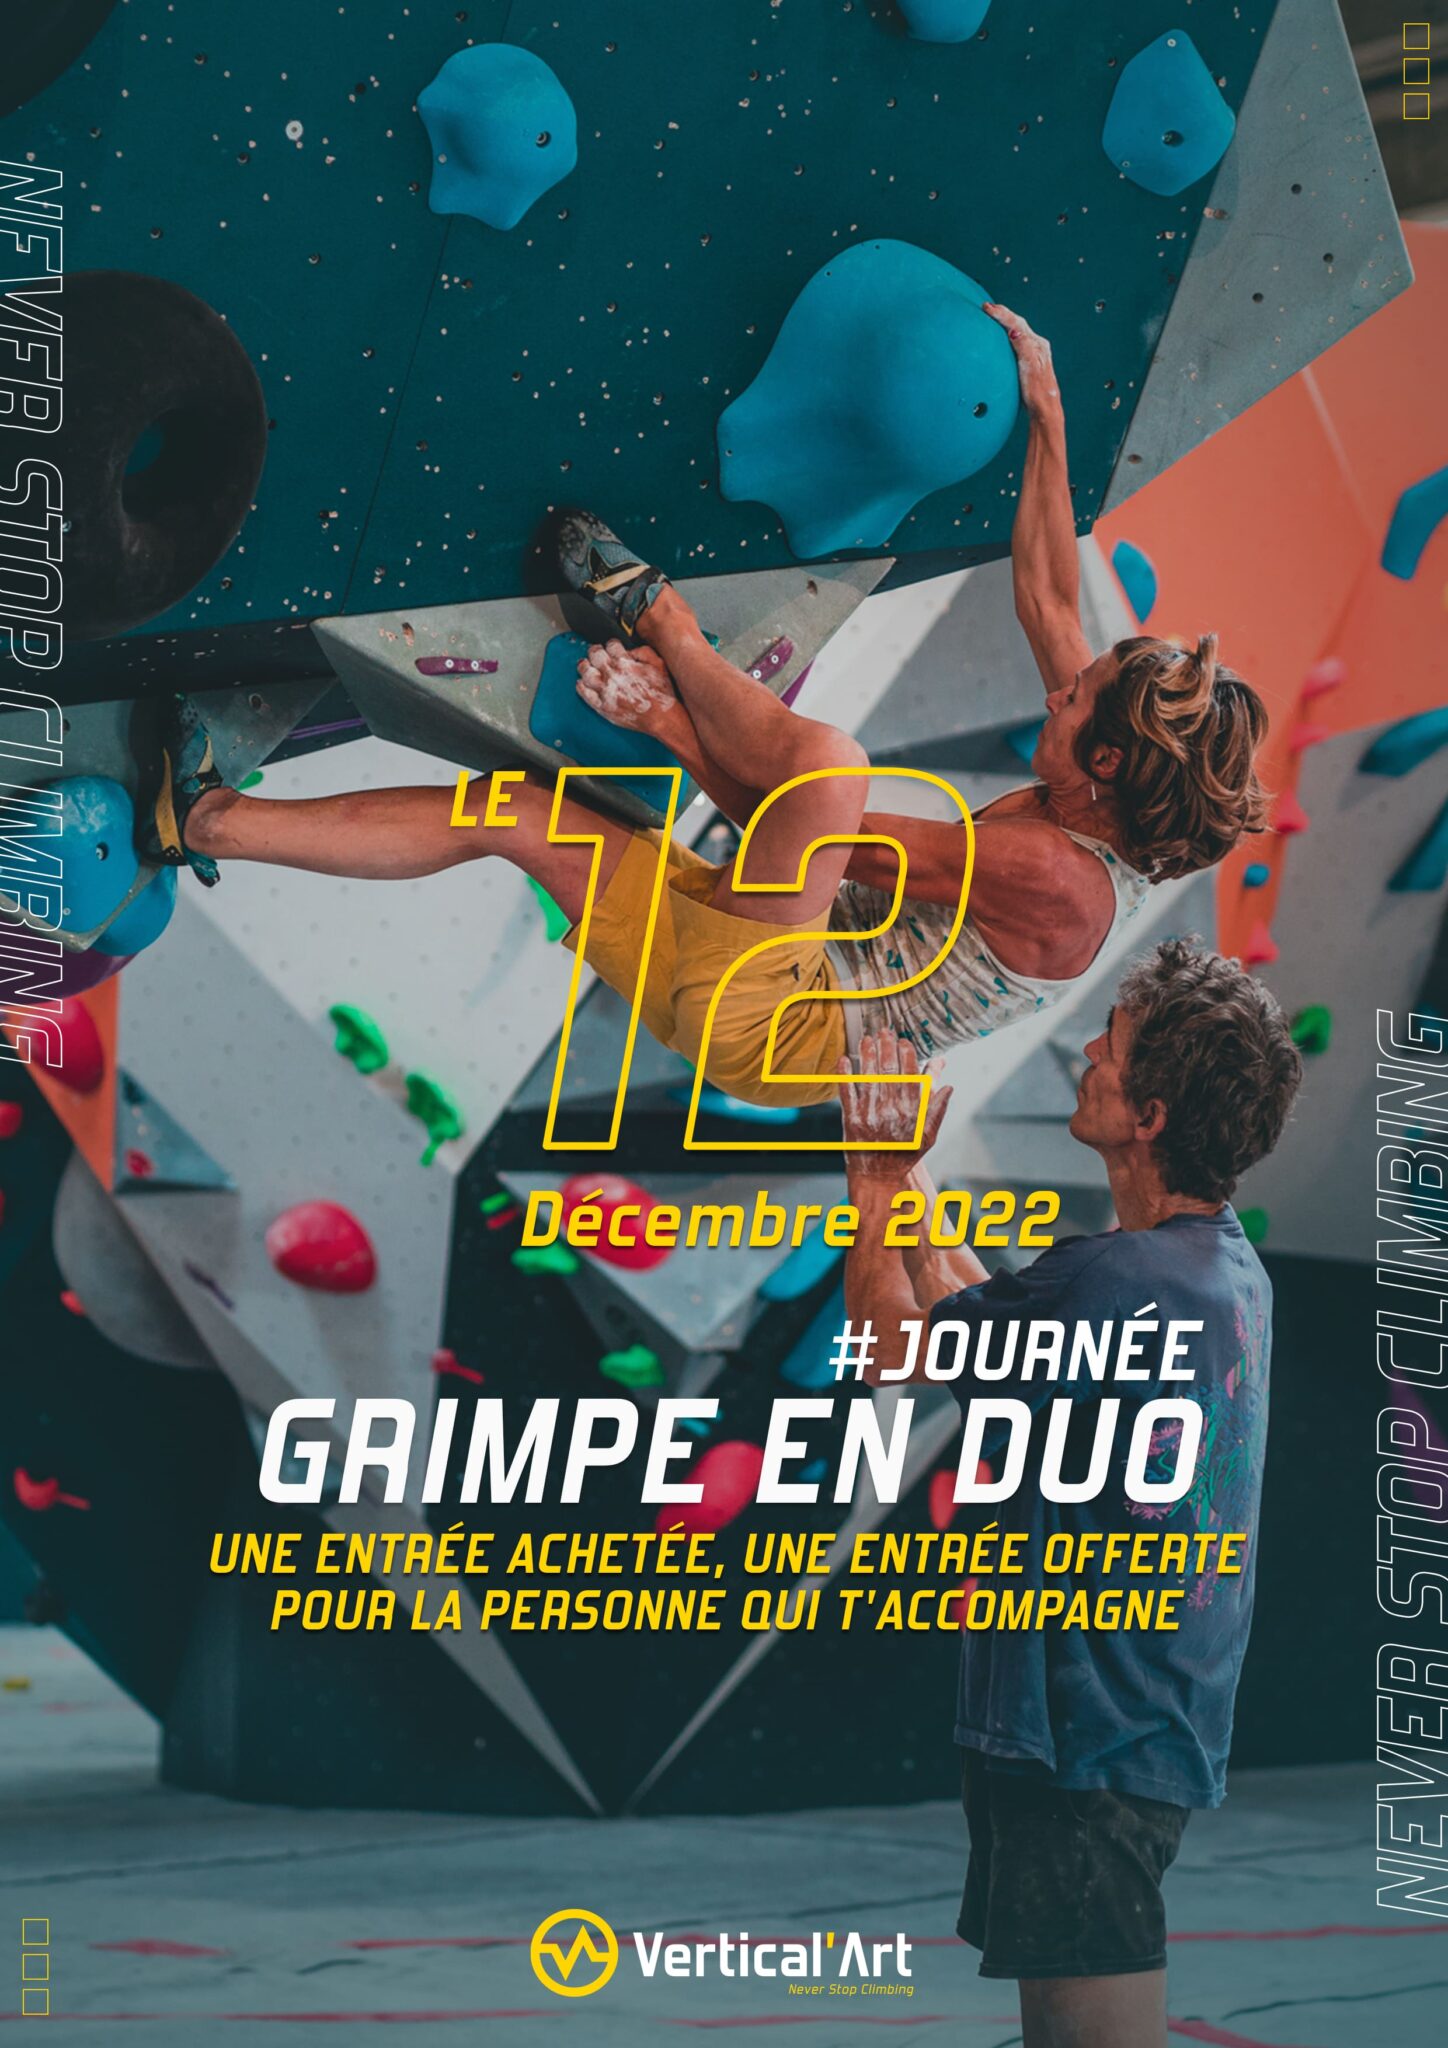 Grimpe en duo Vertical'Art Lyon 12 décembre 2022 une entrée achetée, une offerte